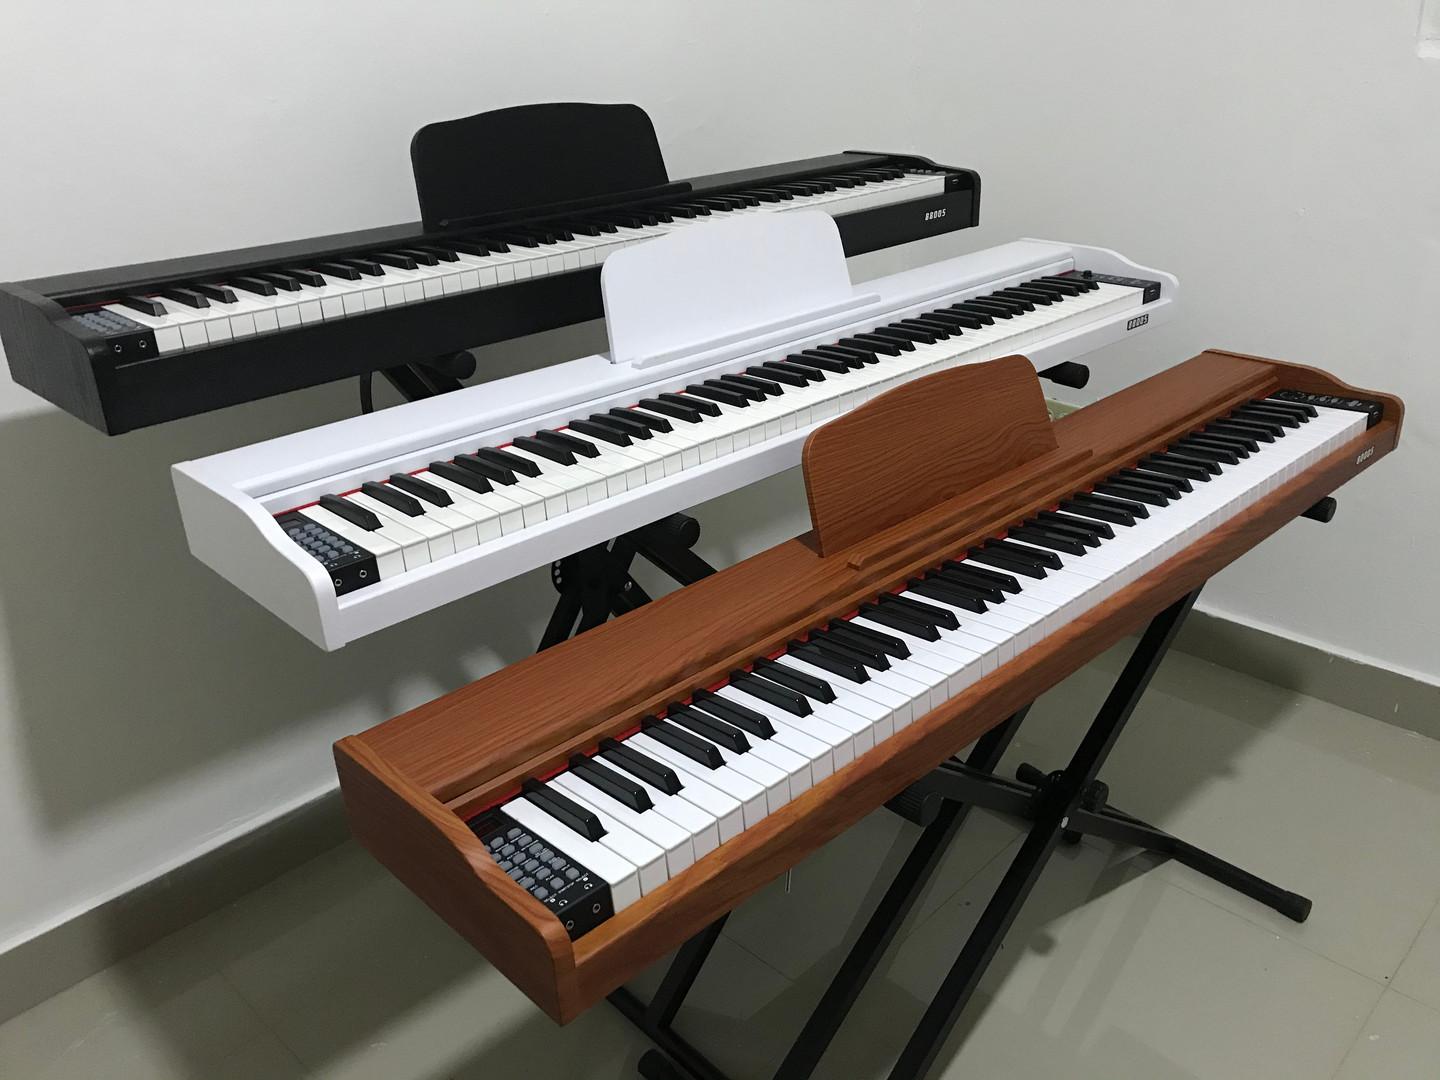 instrumentos musicales - PIANO 7 OCTAVAS 88 TECLAS USB 900 SONIDOS PUERTO MIDI TECLADO, NUEVO !!!